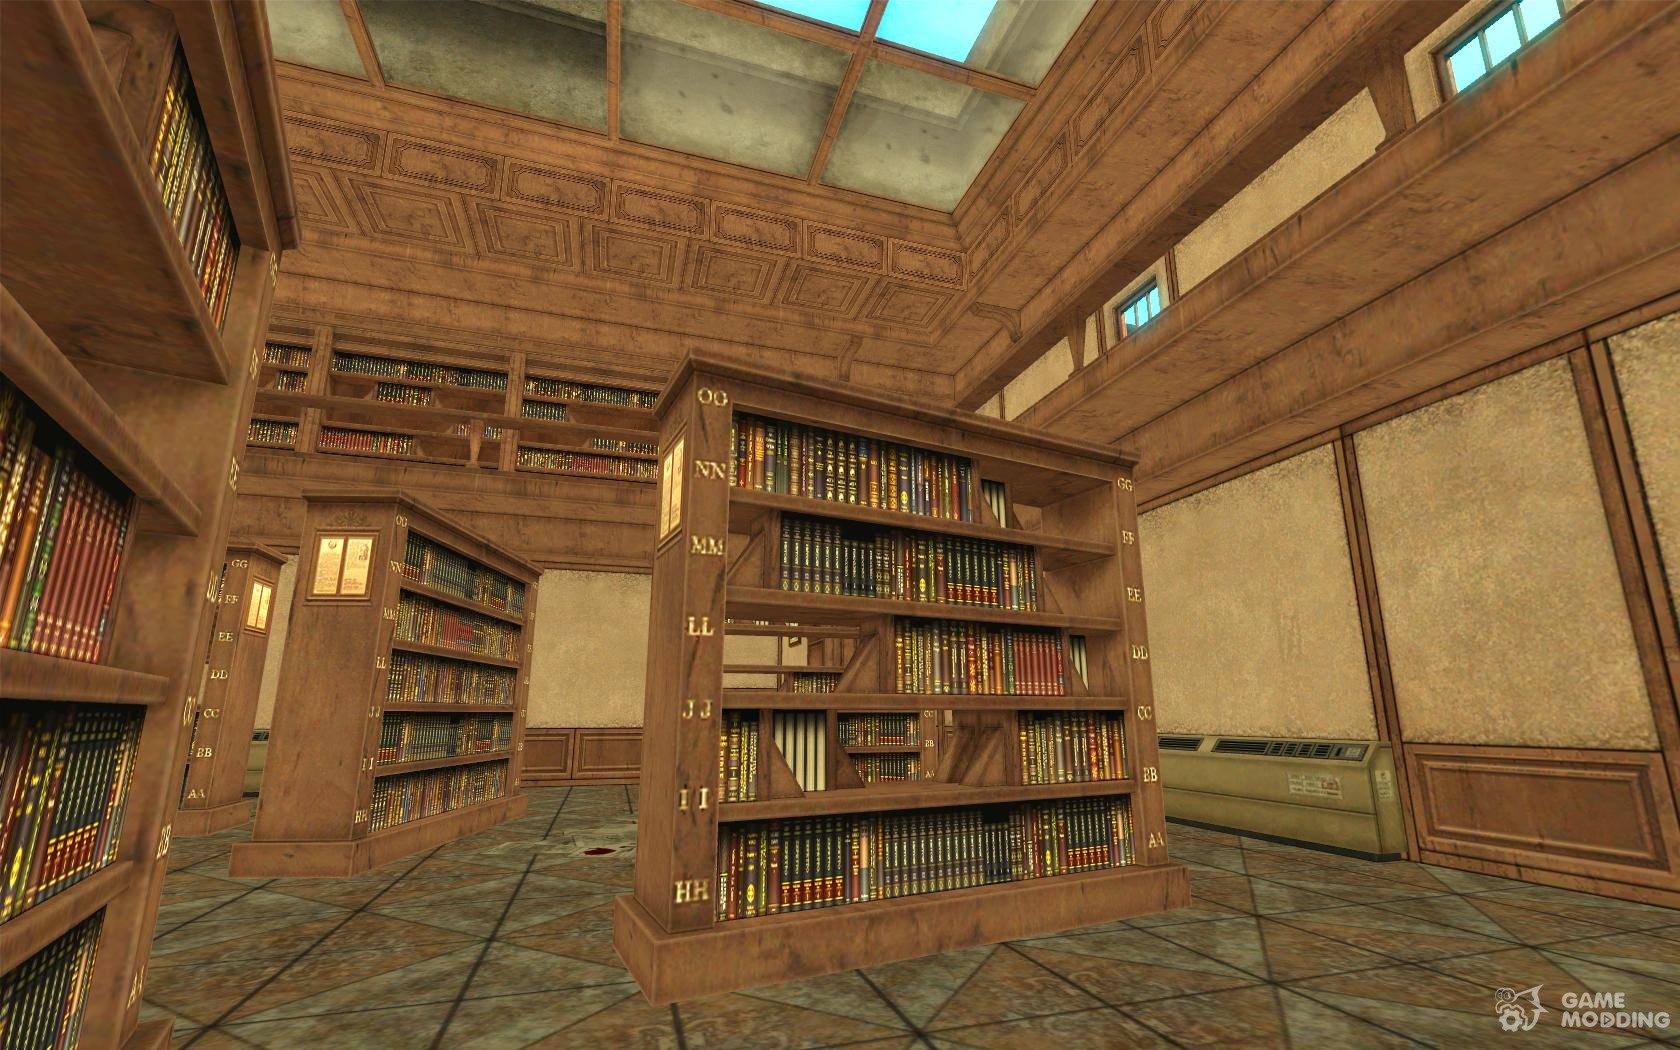 Maps library. Игры в библиотеке. Библиотека из игры. Карта библиотеки. Point blank библиотека.